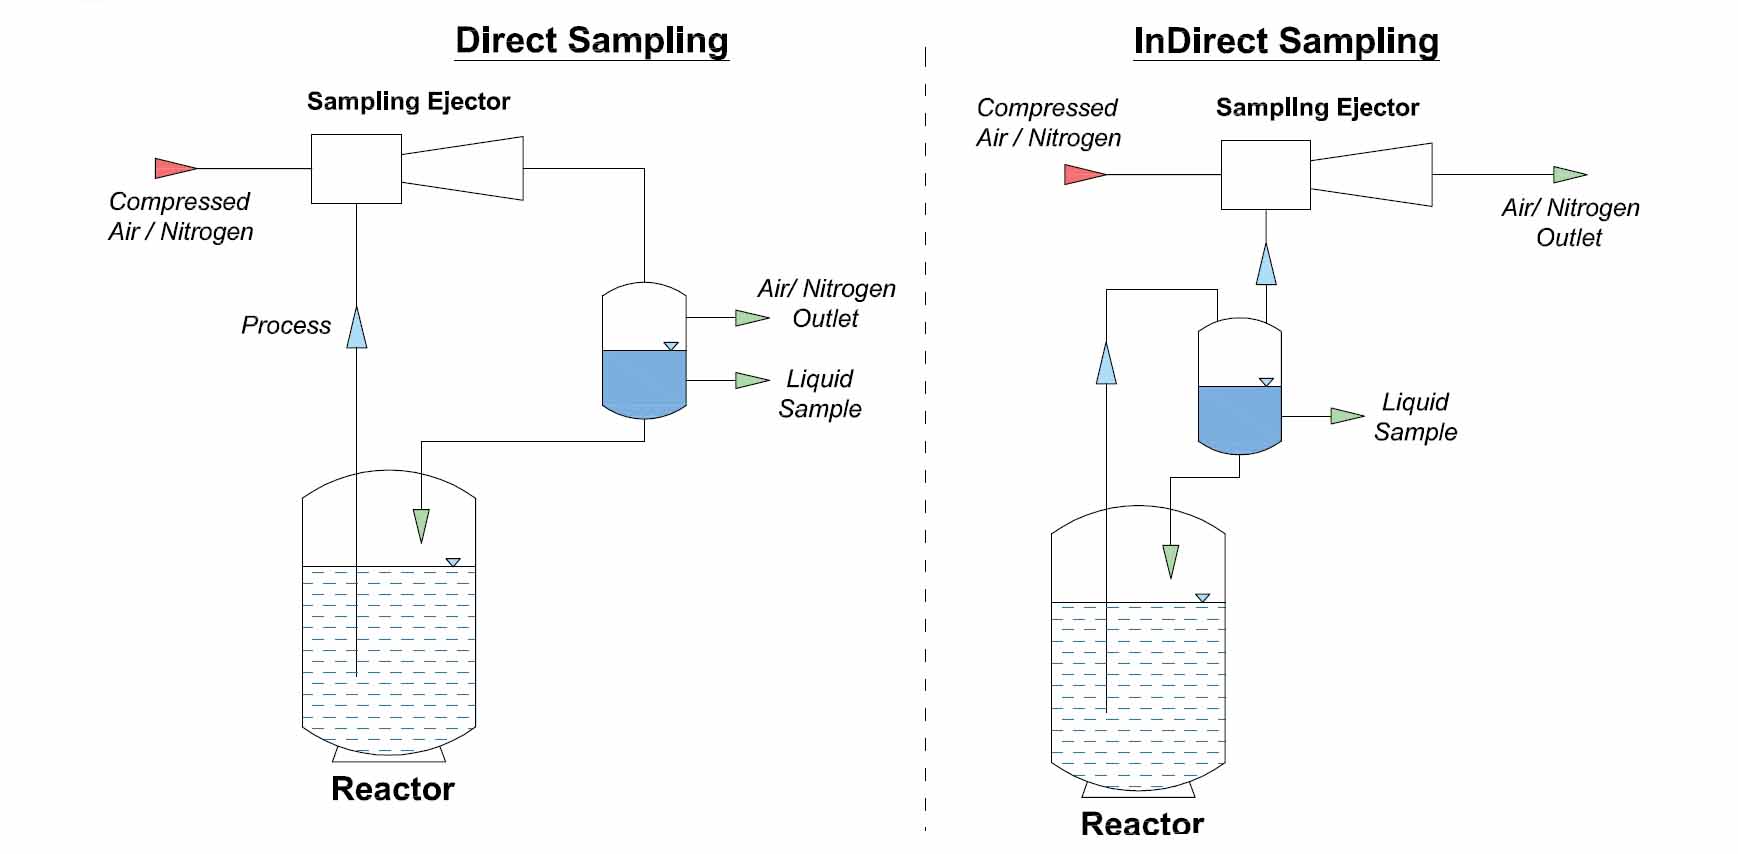 Sampling Ejectors for Liquid & Reactor Sampling